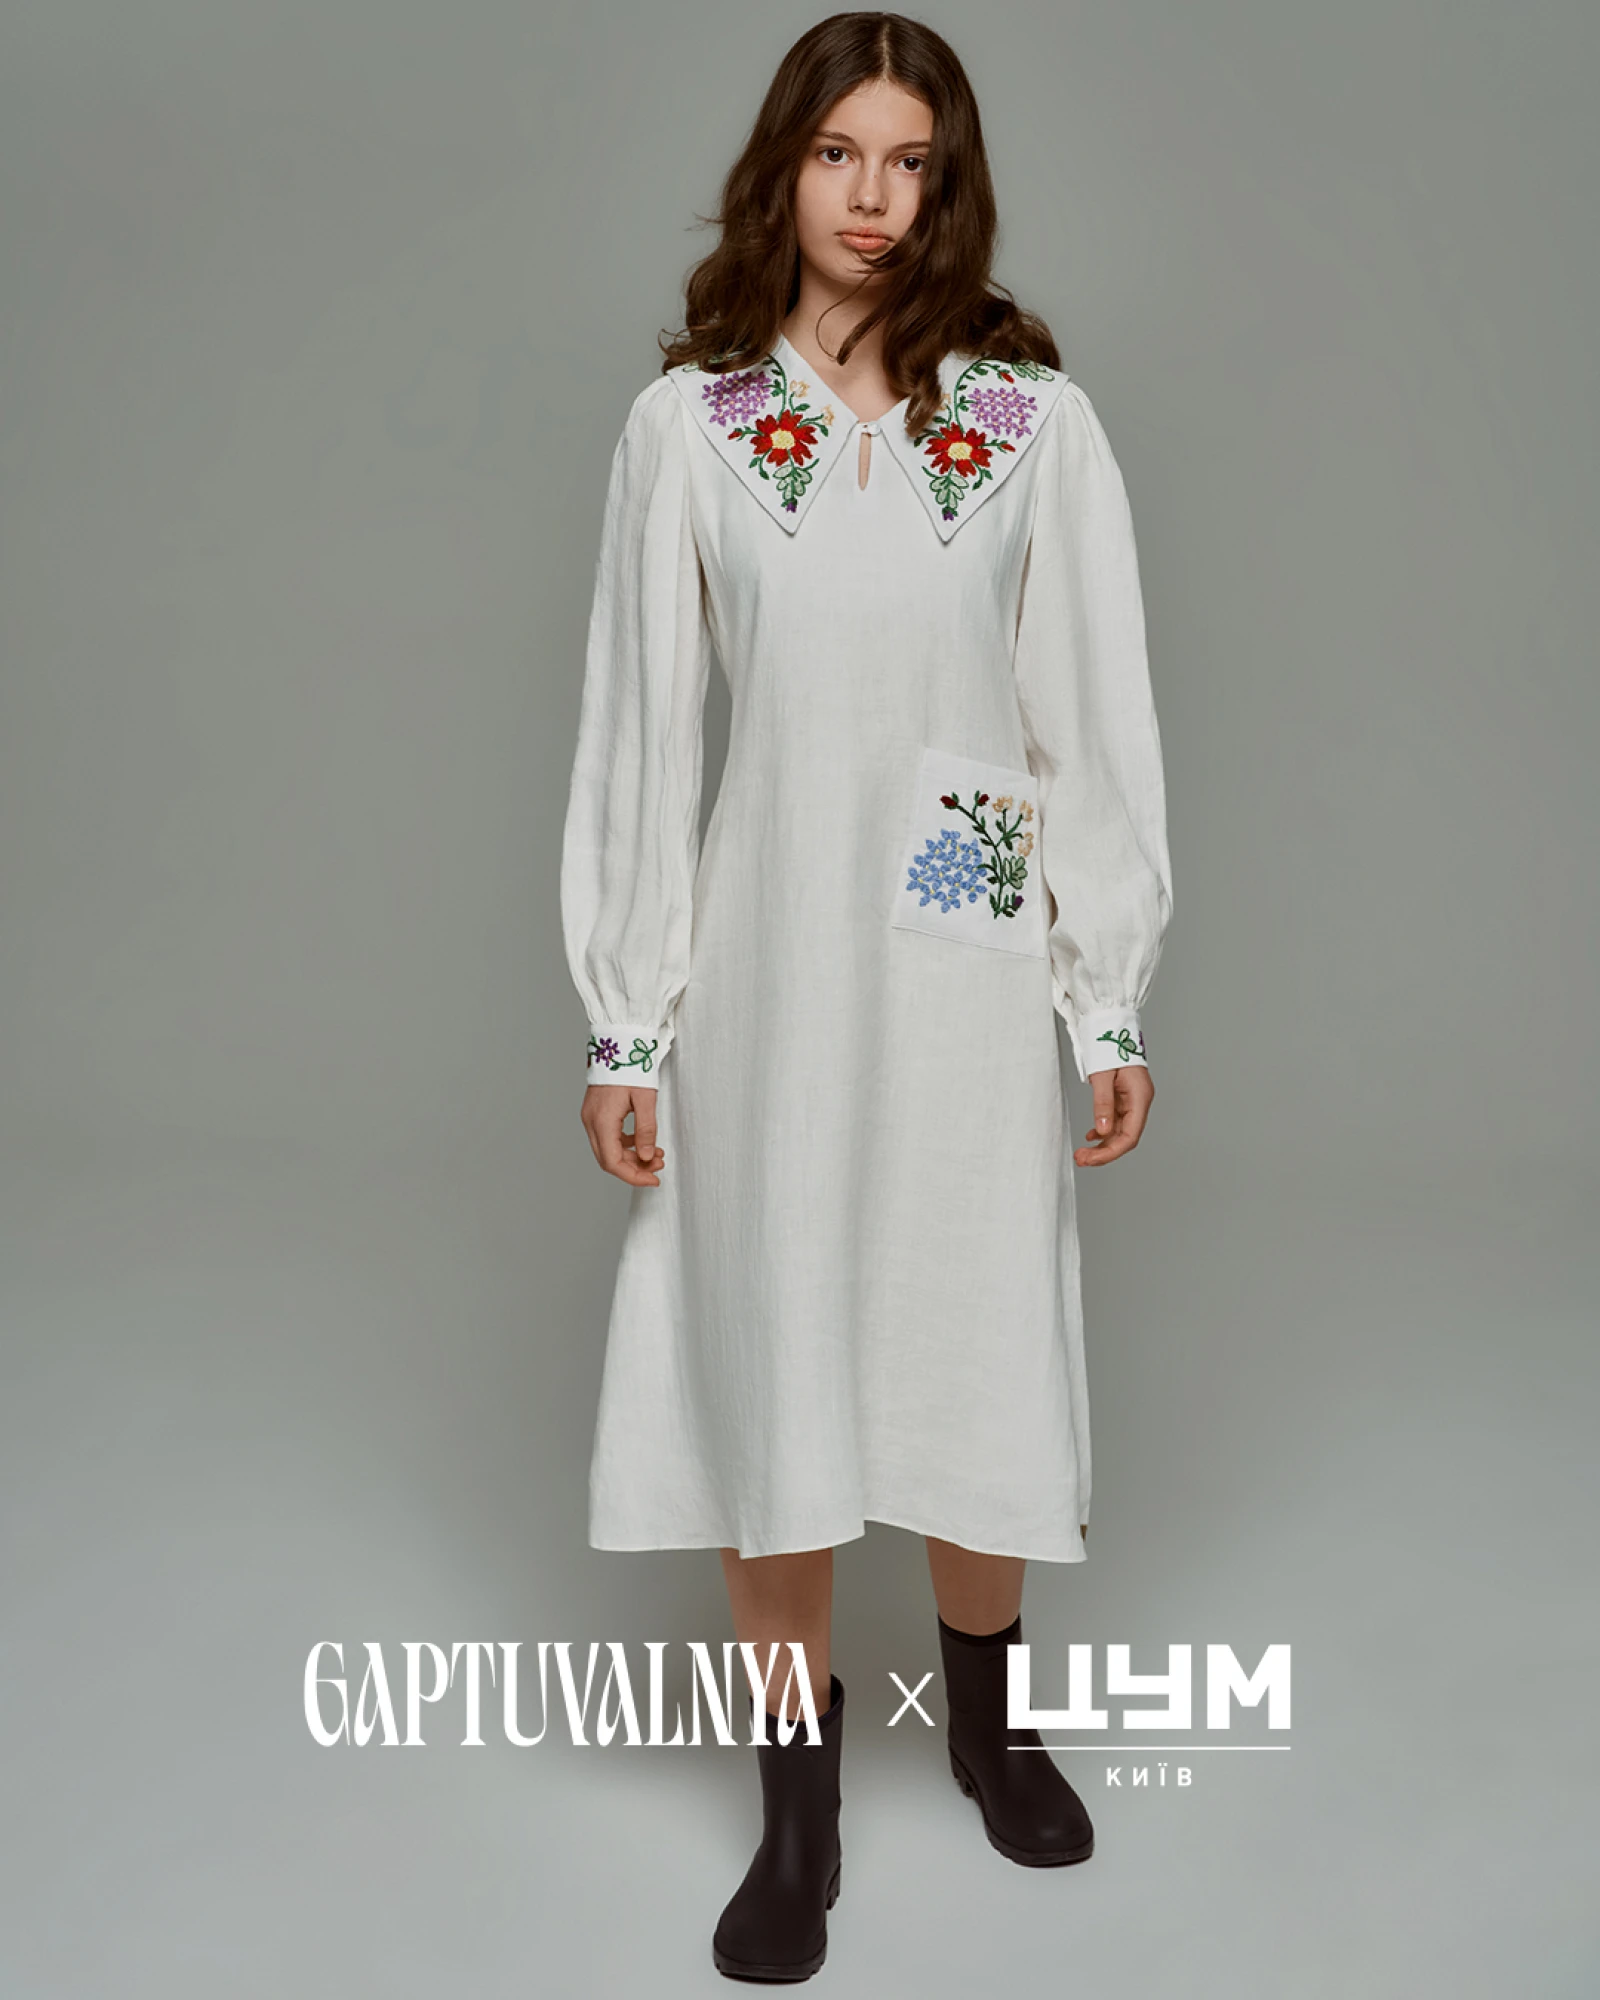 Український бренд етнічного одягу GAPTUVALNYA презентує ексклюзивну великодню колаборацію з ЦУМ